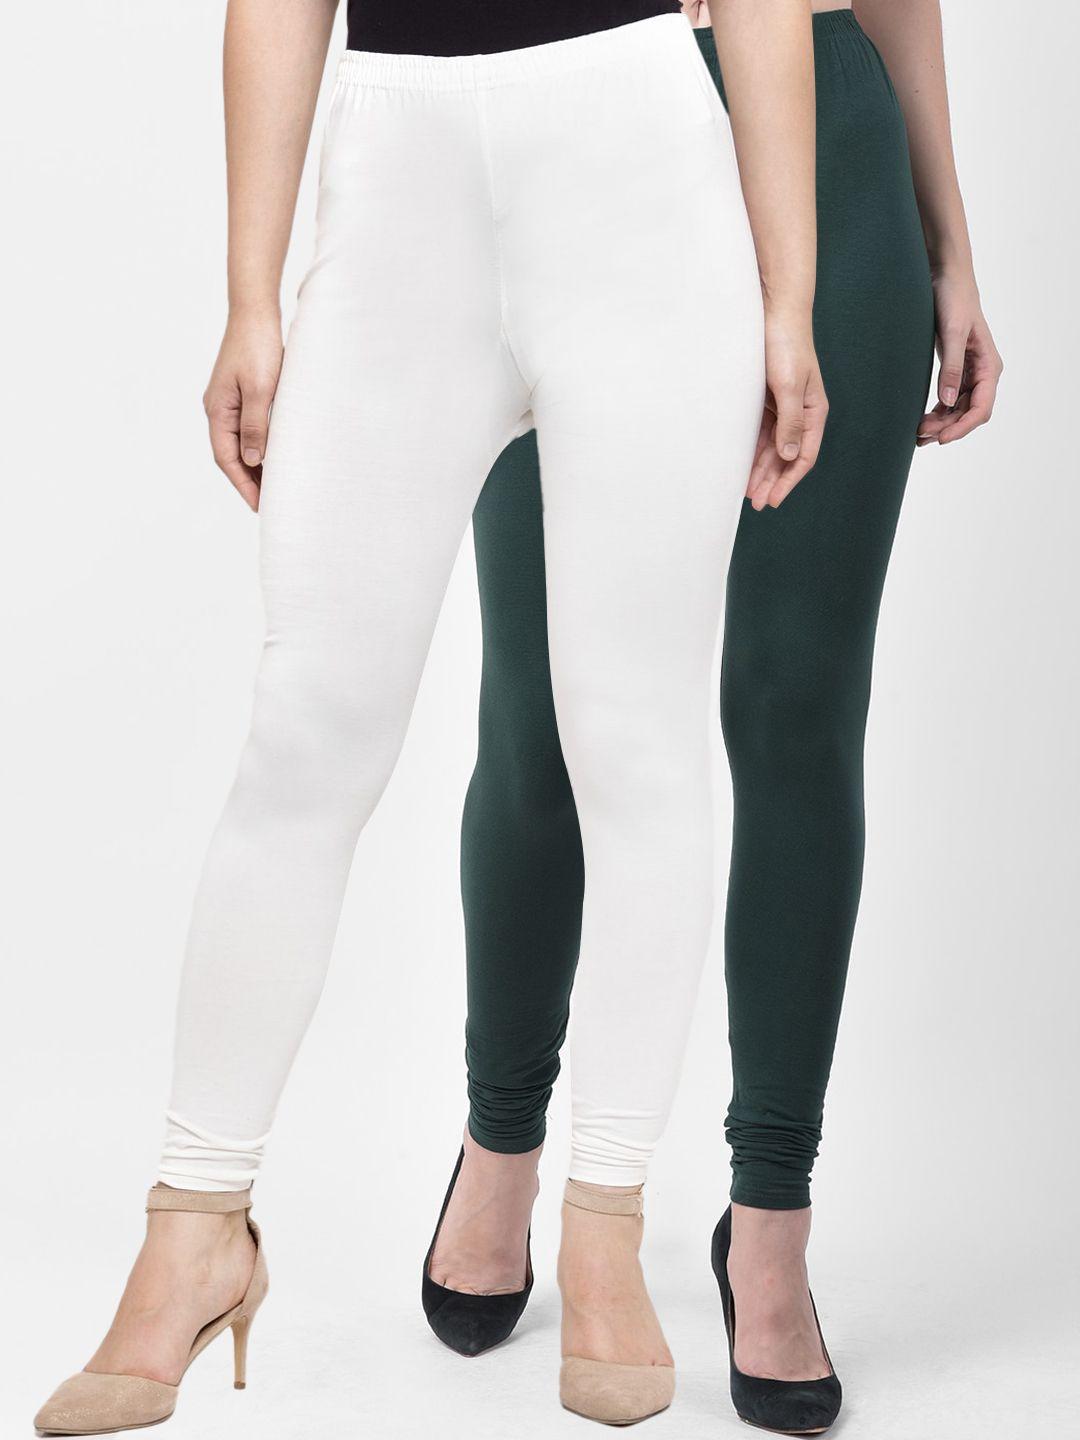 gracit-women-pack-of-2-white-&-green-solid-ankle-length-leggings